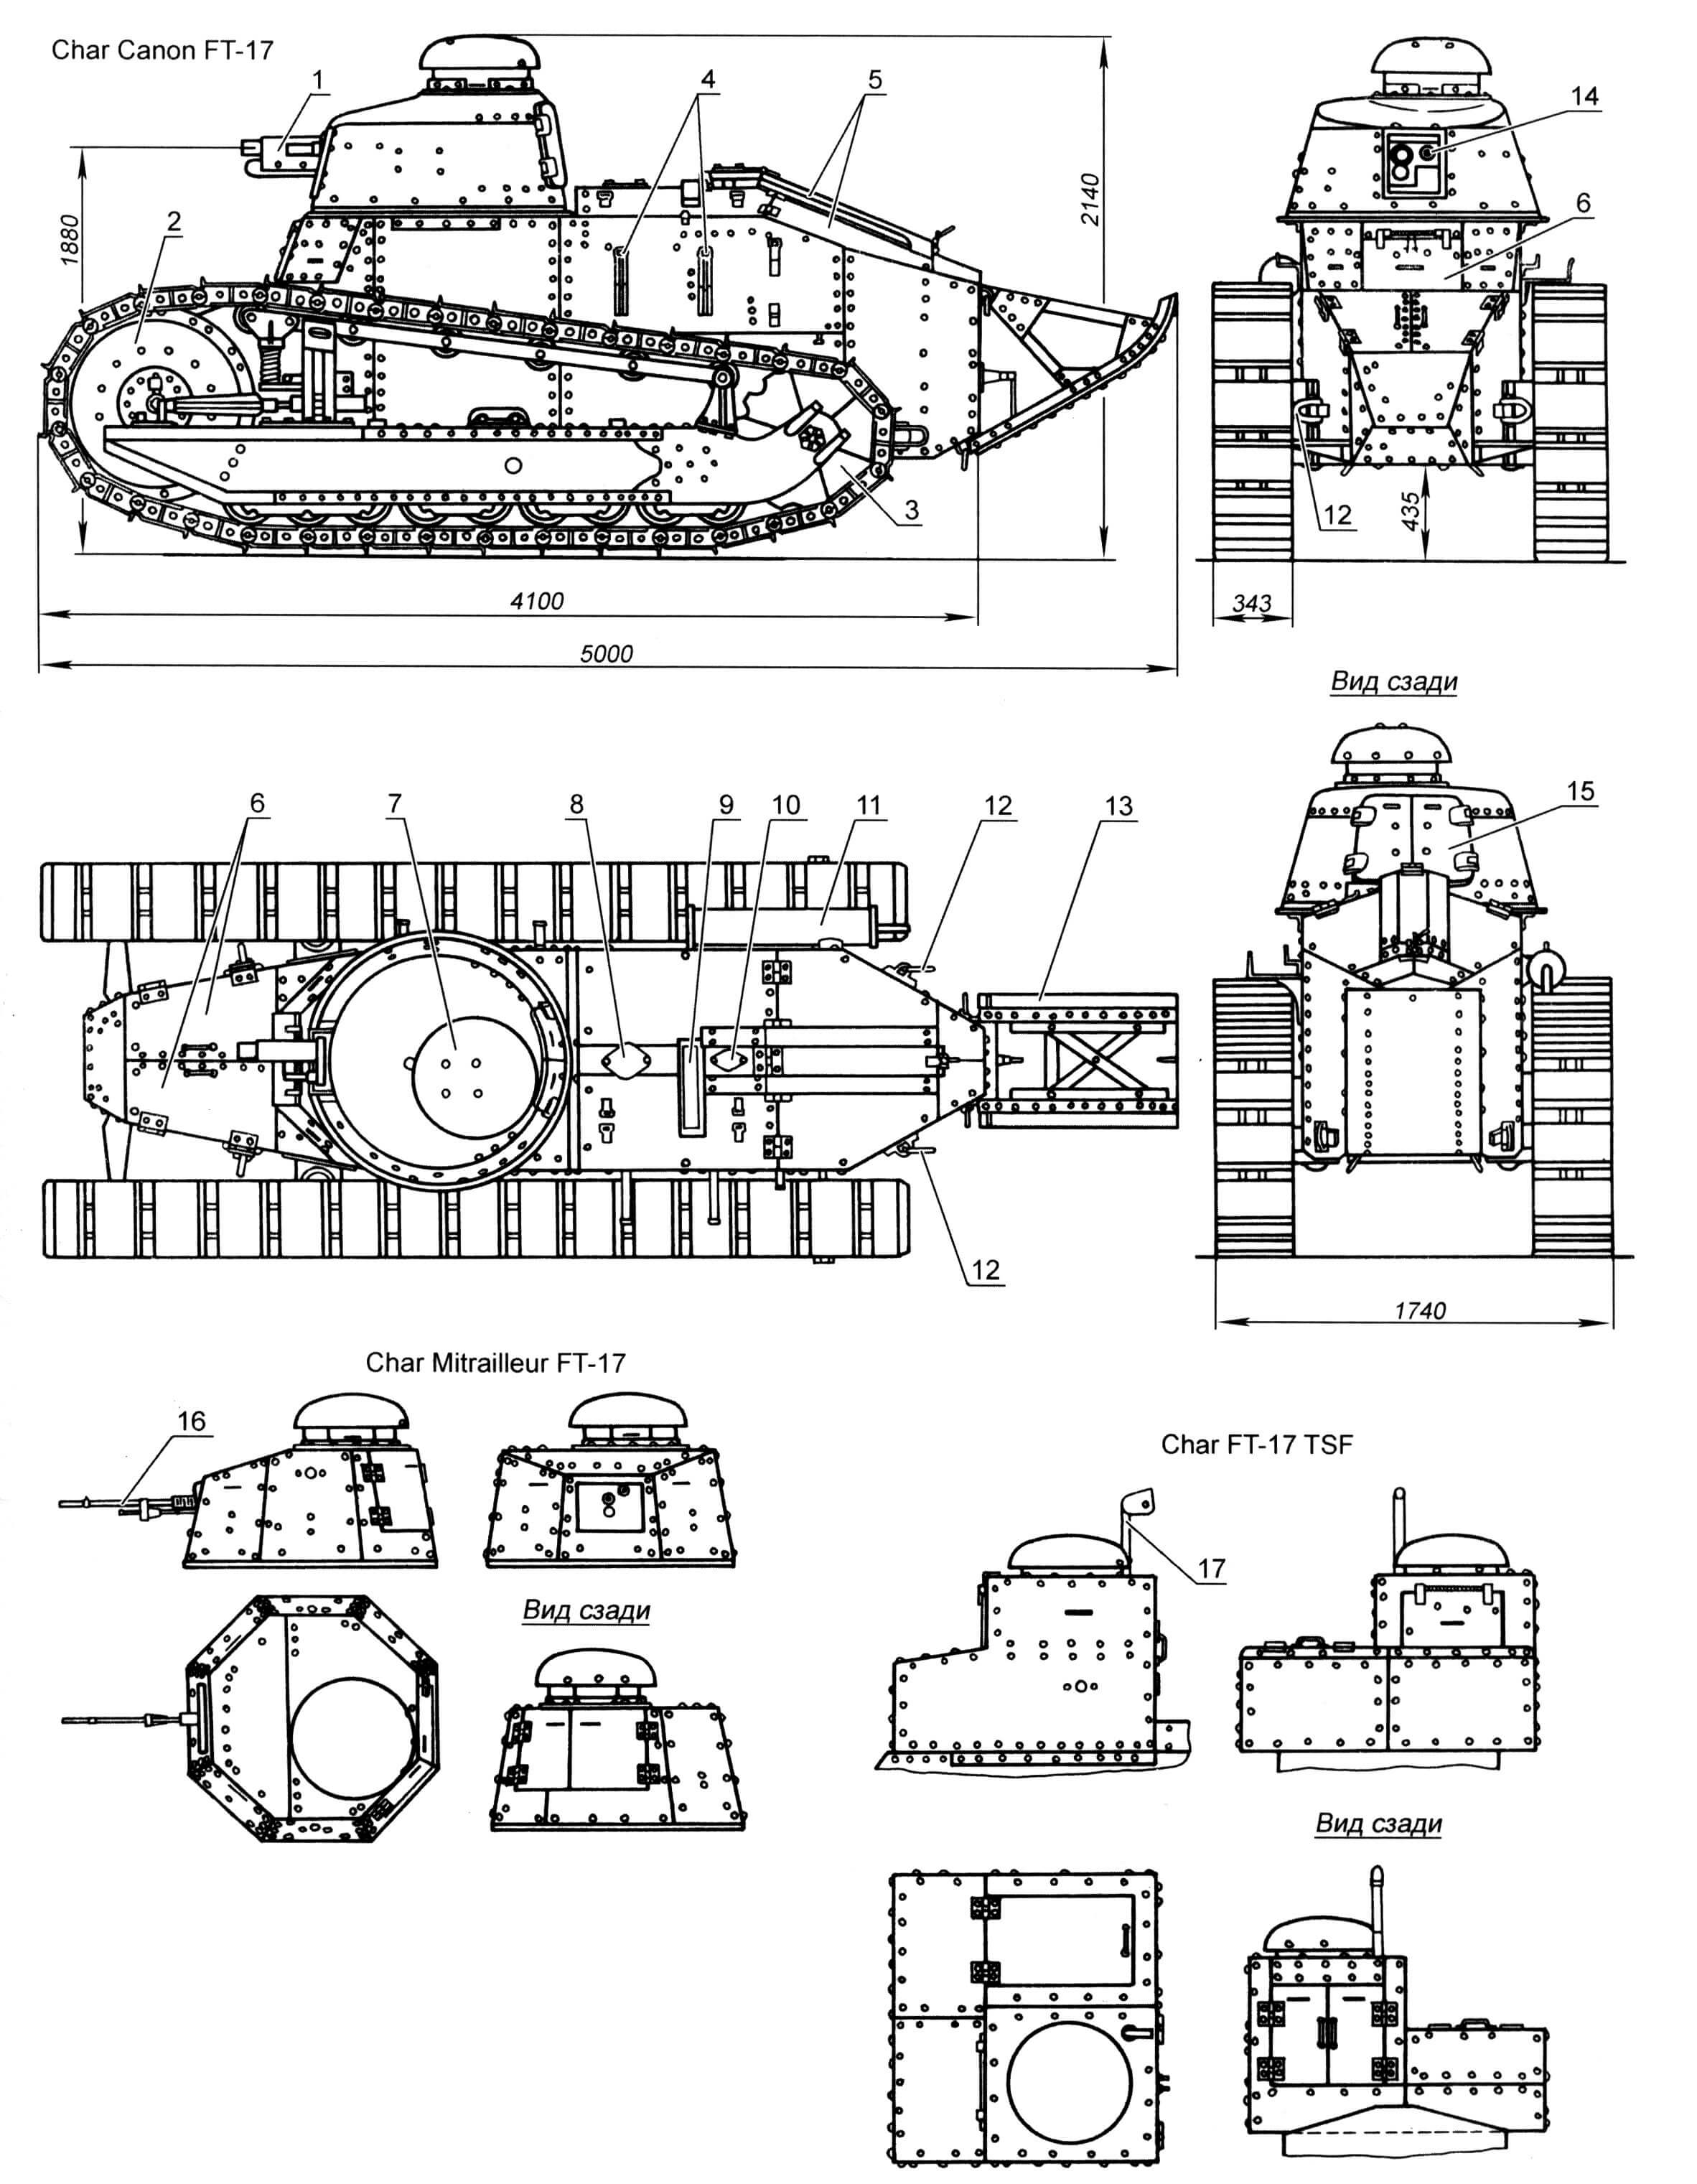 Легкий танк «Рено» FT-17: 1- 37-мм пушка; 2 - направляющее колесо; 3 - ведущее колесо; 4 - кронштейны крепления ящика ЗИП; 5 - крышки МТО; 6 - входные люки; 7 - откидной колпак командирской башенки; 8 - крышка горловины топливного бака; 9 - окно вентилятора; 10 - крышка горловины радиатора; 11 - глушитель; 12 - буксирные серьги; 13 - «хвост»; 14 - окно прицела; 15 - запасной выходной люк; 16 - 8-мм пулемет Гочкиса; 17 - кронштейн крепления антенны